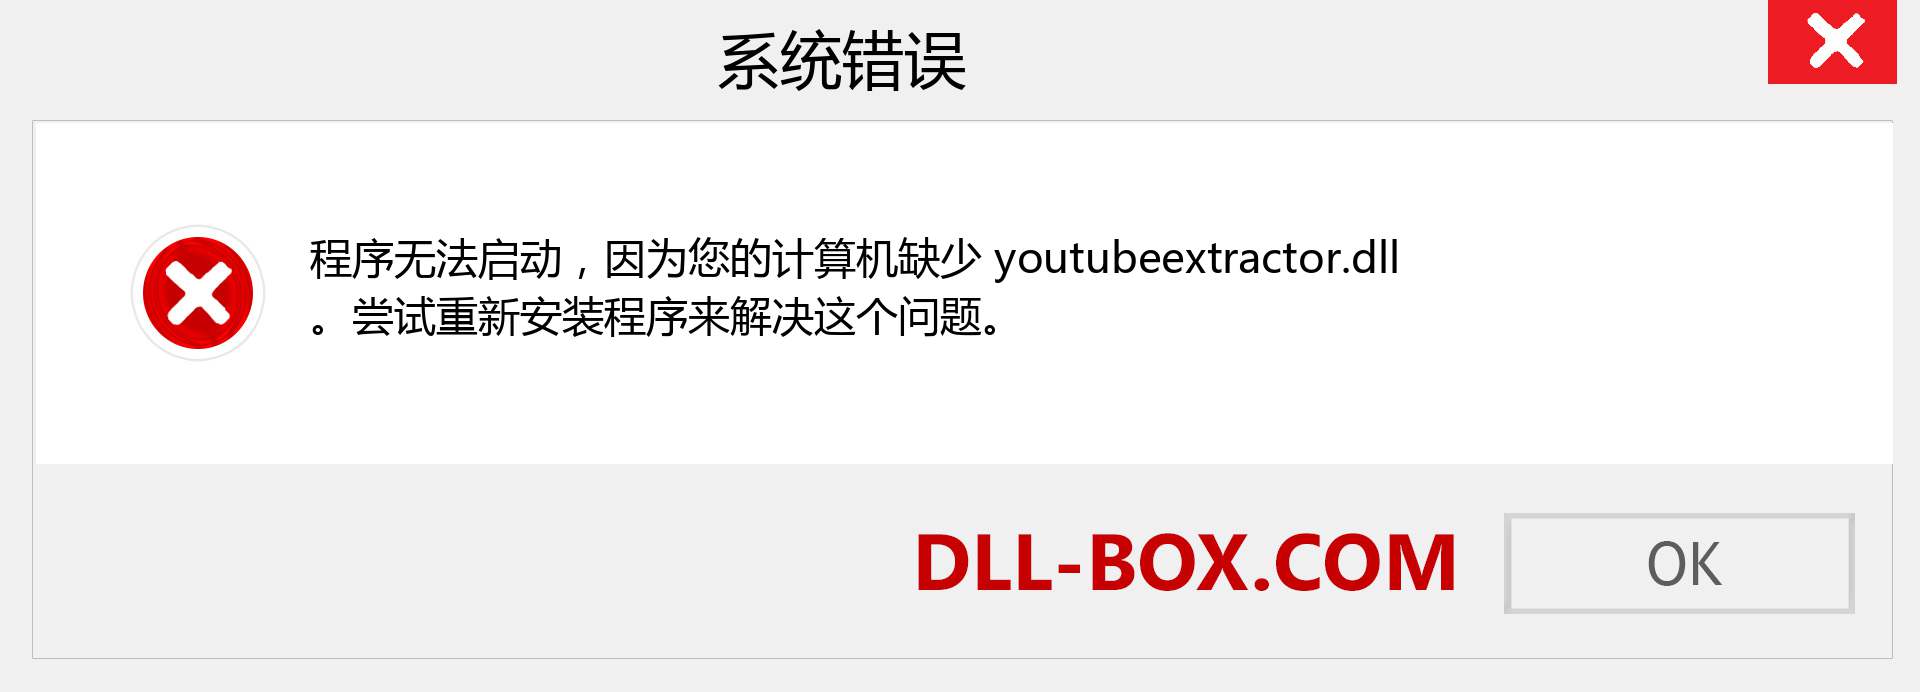 youtubeextractor.dll 文件丢失？。 适用于 Windows 7、8、10 的下载 - 修复 Windows、照片、图像上的 youtubeextractor dll 丢失错误